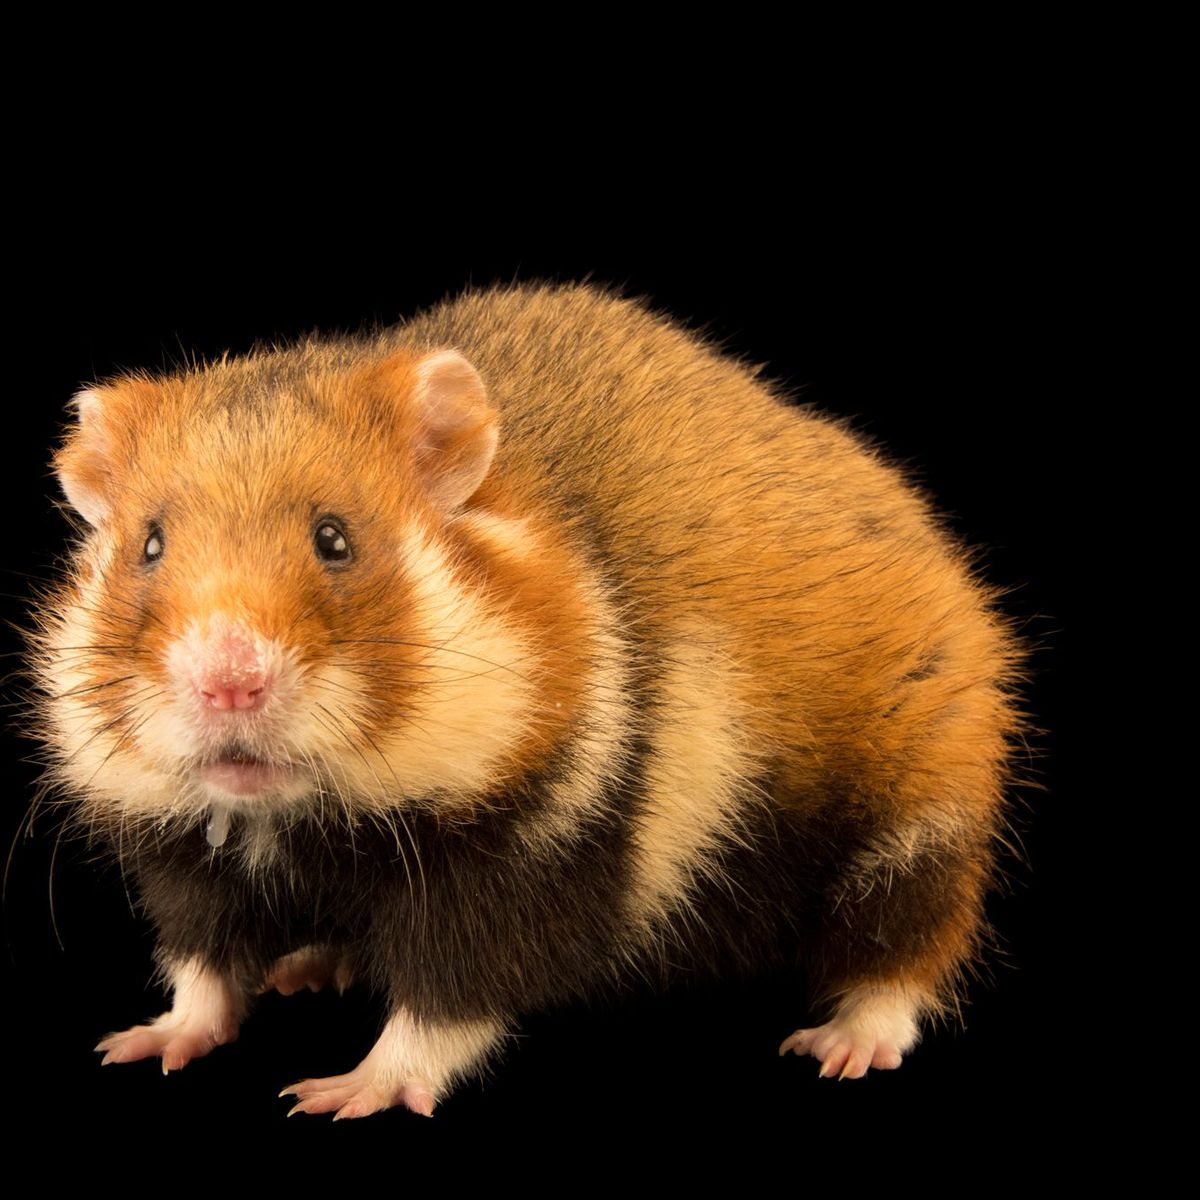 Brochure homoseksueel Millimeter s Werelds zeldzaamste wilde hamster ernstig bedreigd